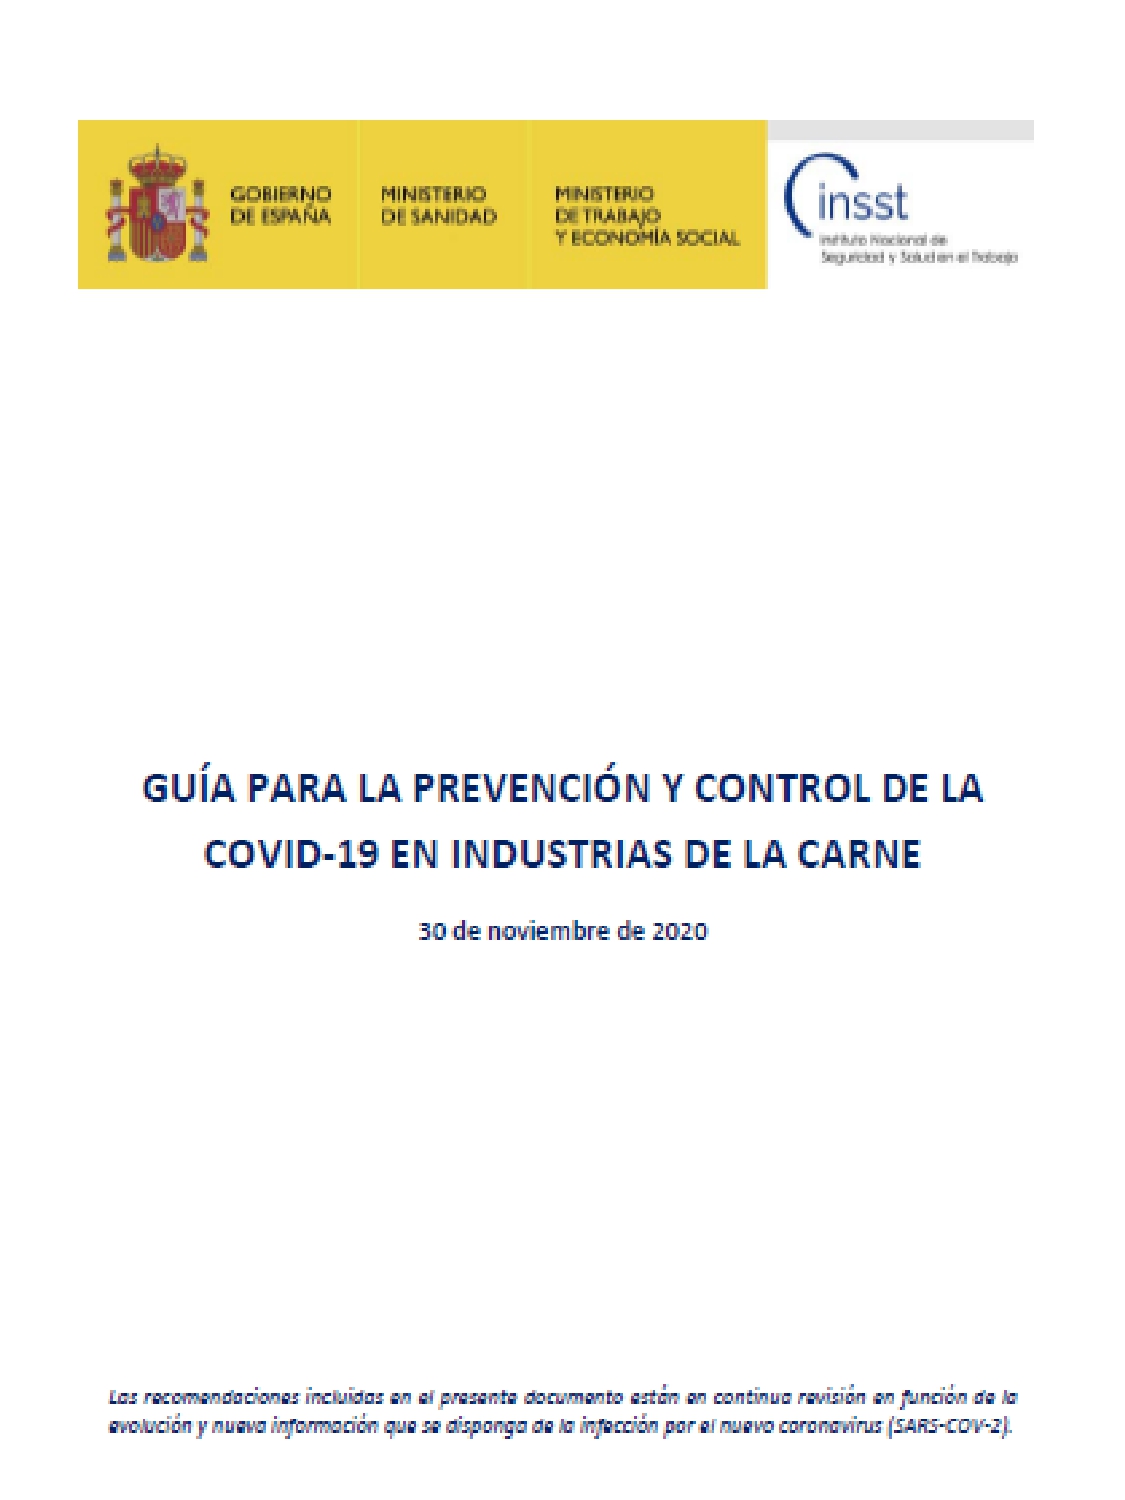 Guía para la prevención y control de la Covid-19 en industrias de la carne